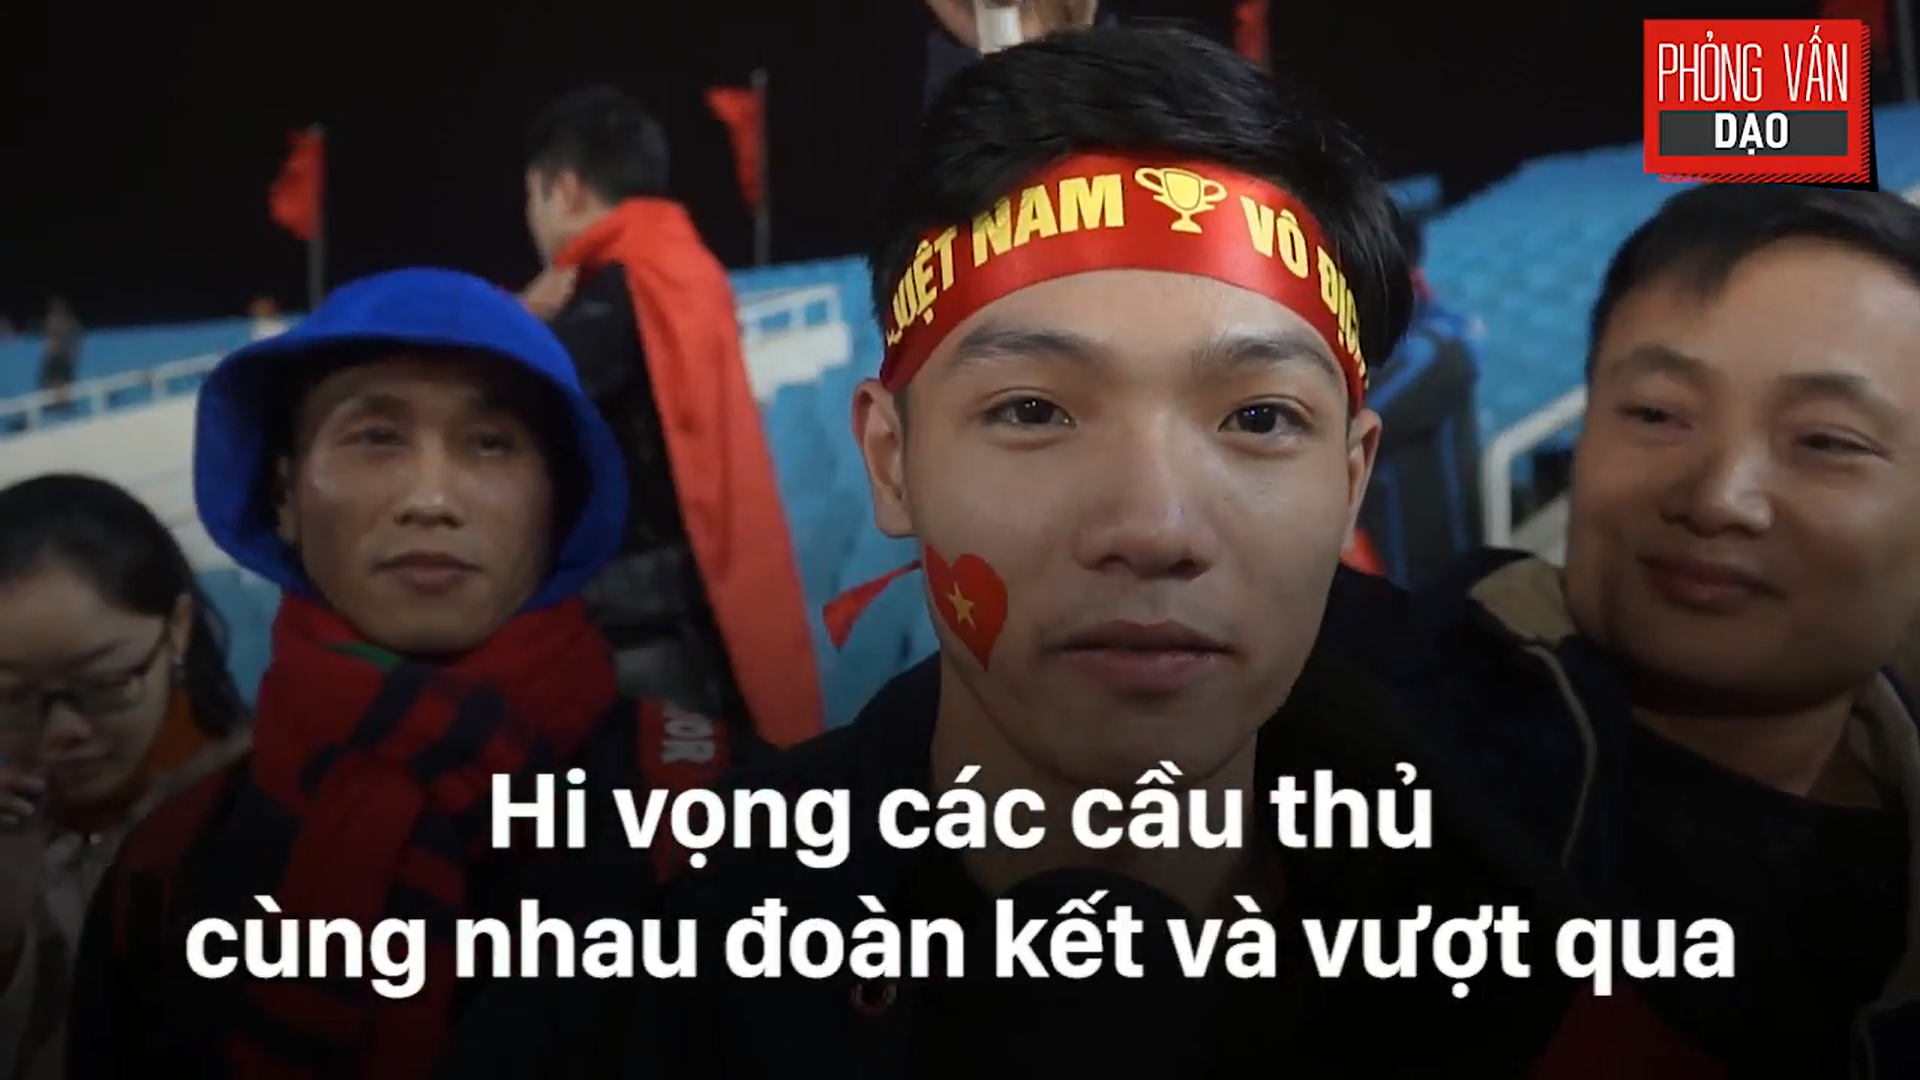 Phỏng vấn dạo: Cảm xúc của người hâm mộ khi đón U23 Việt Nam trở về trong vòng tay - Ảnh 18.